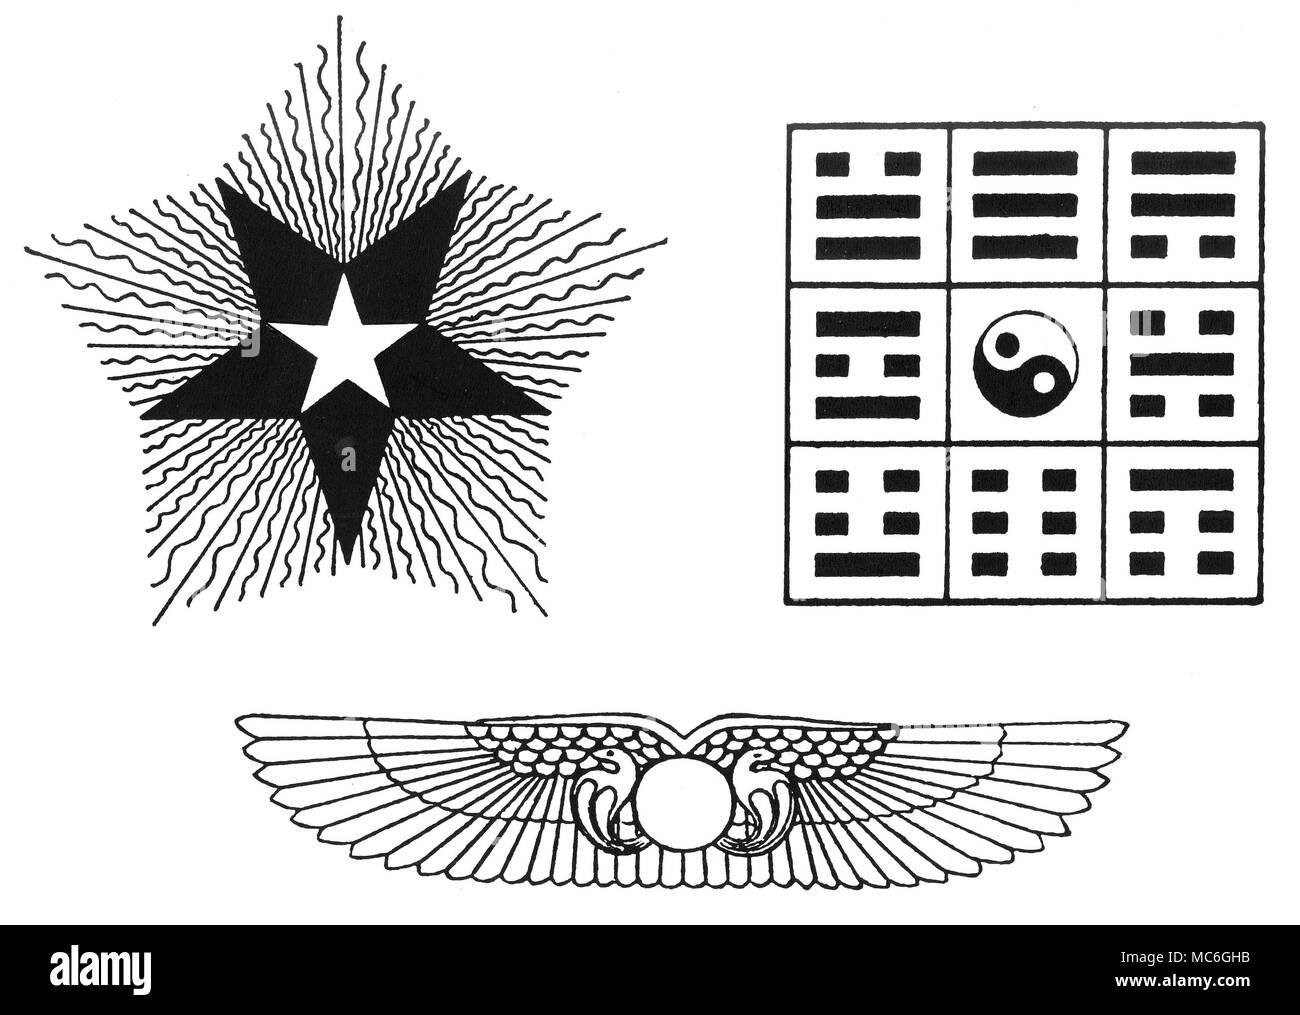 Simboli - TRIPLE PENTAGRAM - otto trigrammi - disco solare simboli da Oswald Wirth, Le Tarot des Imagiers du Moyen Age, 1927. [Top left] un simbolo chiamato da Oswald Wirth, 'triple pentagram', che ha collegamenti con i tarocchi card n. 15 (perché la numerologia 3 x 5 = 15). Il bianco pentagramma rappresenta l'energia dell'intelligenza umana. Il pentagramma scuro, che è invertita, rappresenta le tenebre nell'uomo (esteriorizzato come il diavolo), mentre la fiamma esterno simile pentagramma rappresenta la scintilla divina, l energia cosmica entro il quale l'umanità dimora: come dice Wirth è propriamente un Glor Foto Stock